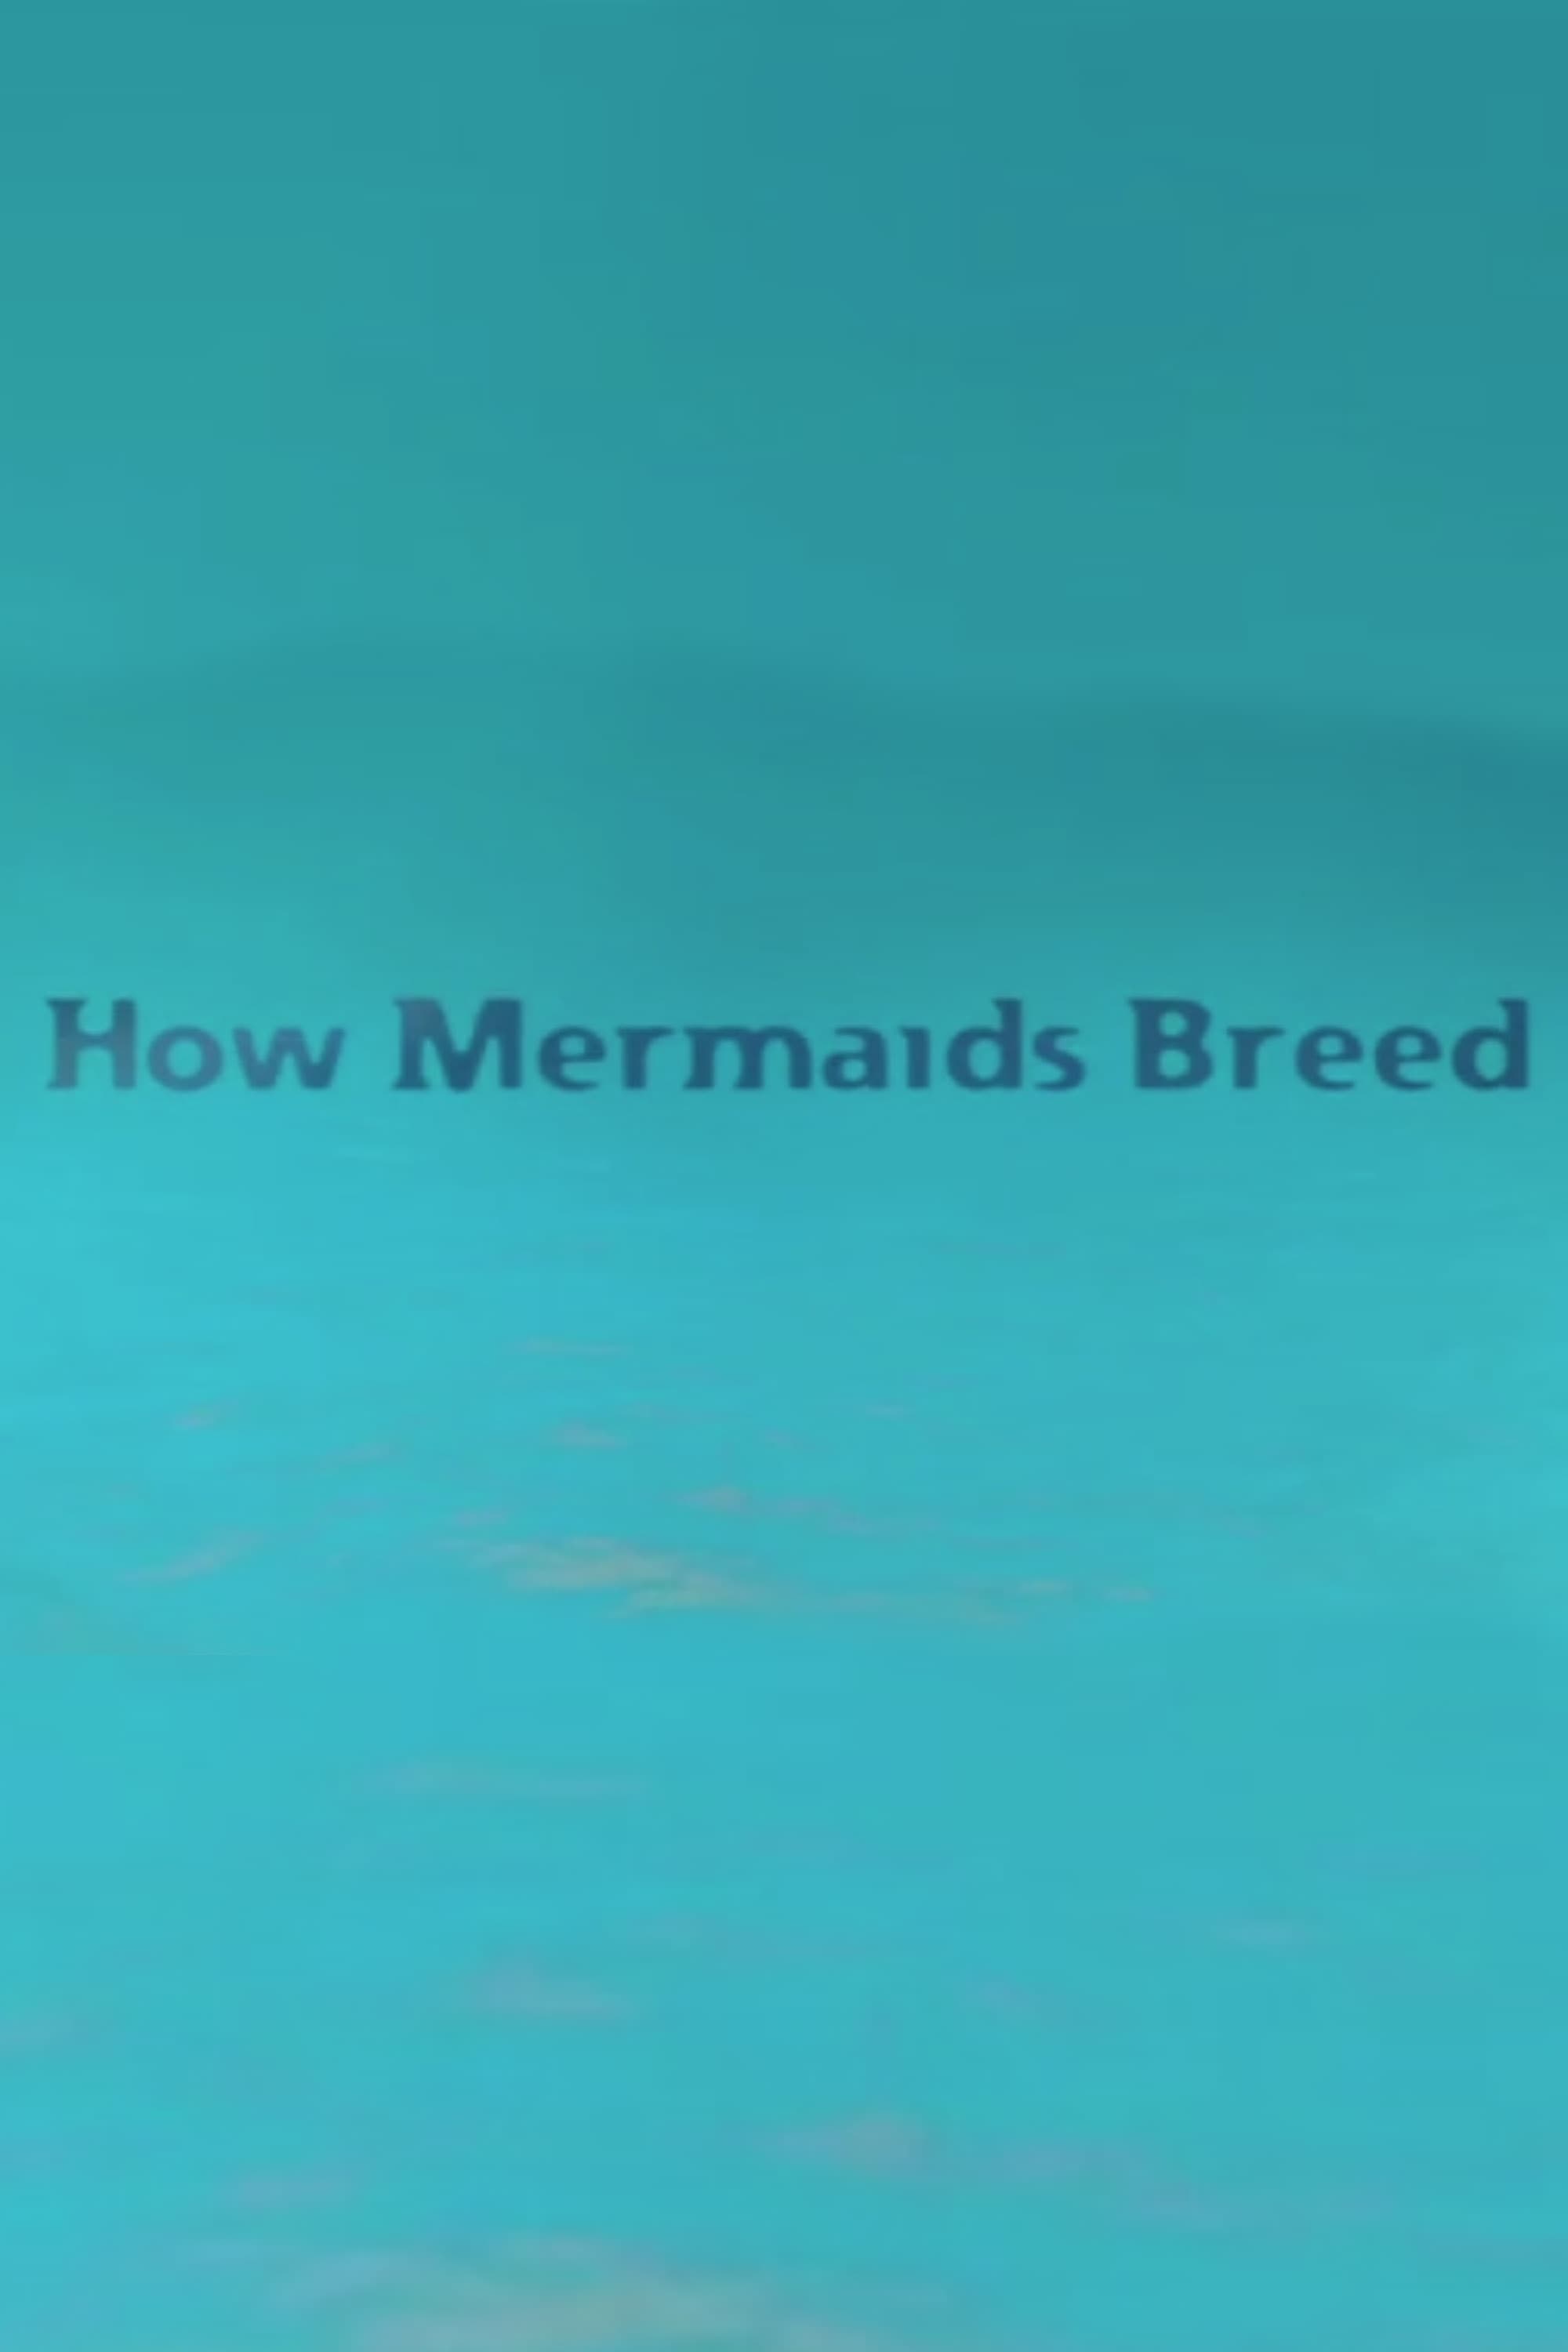 How Mermaids Breed